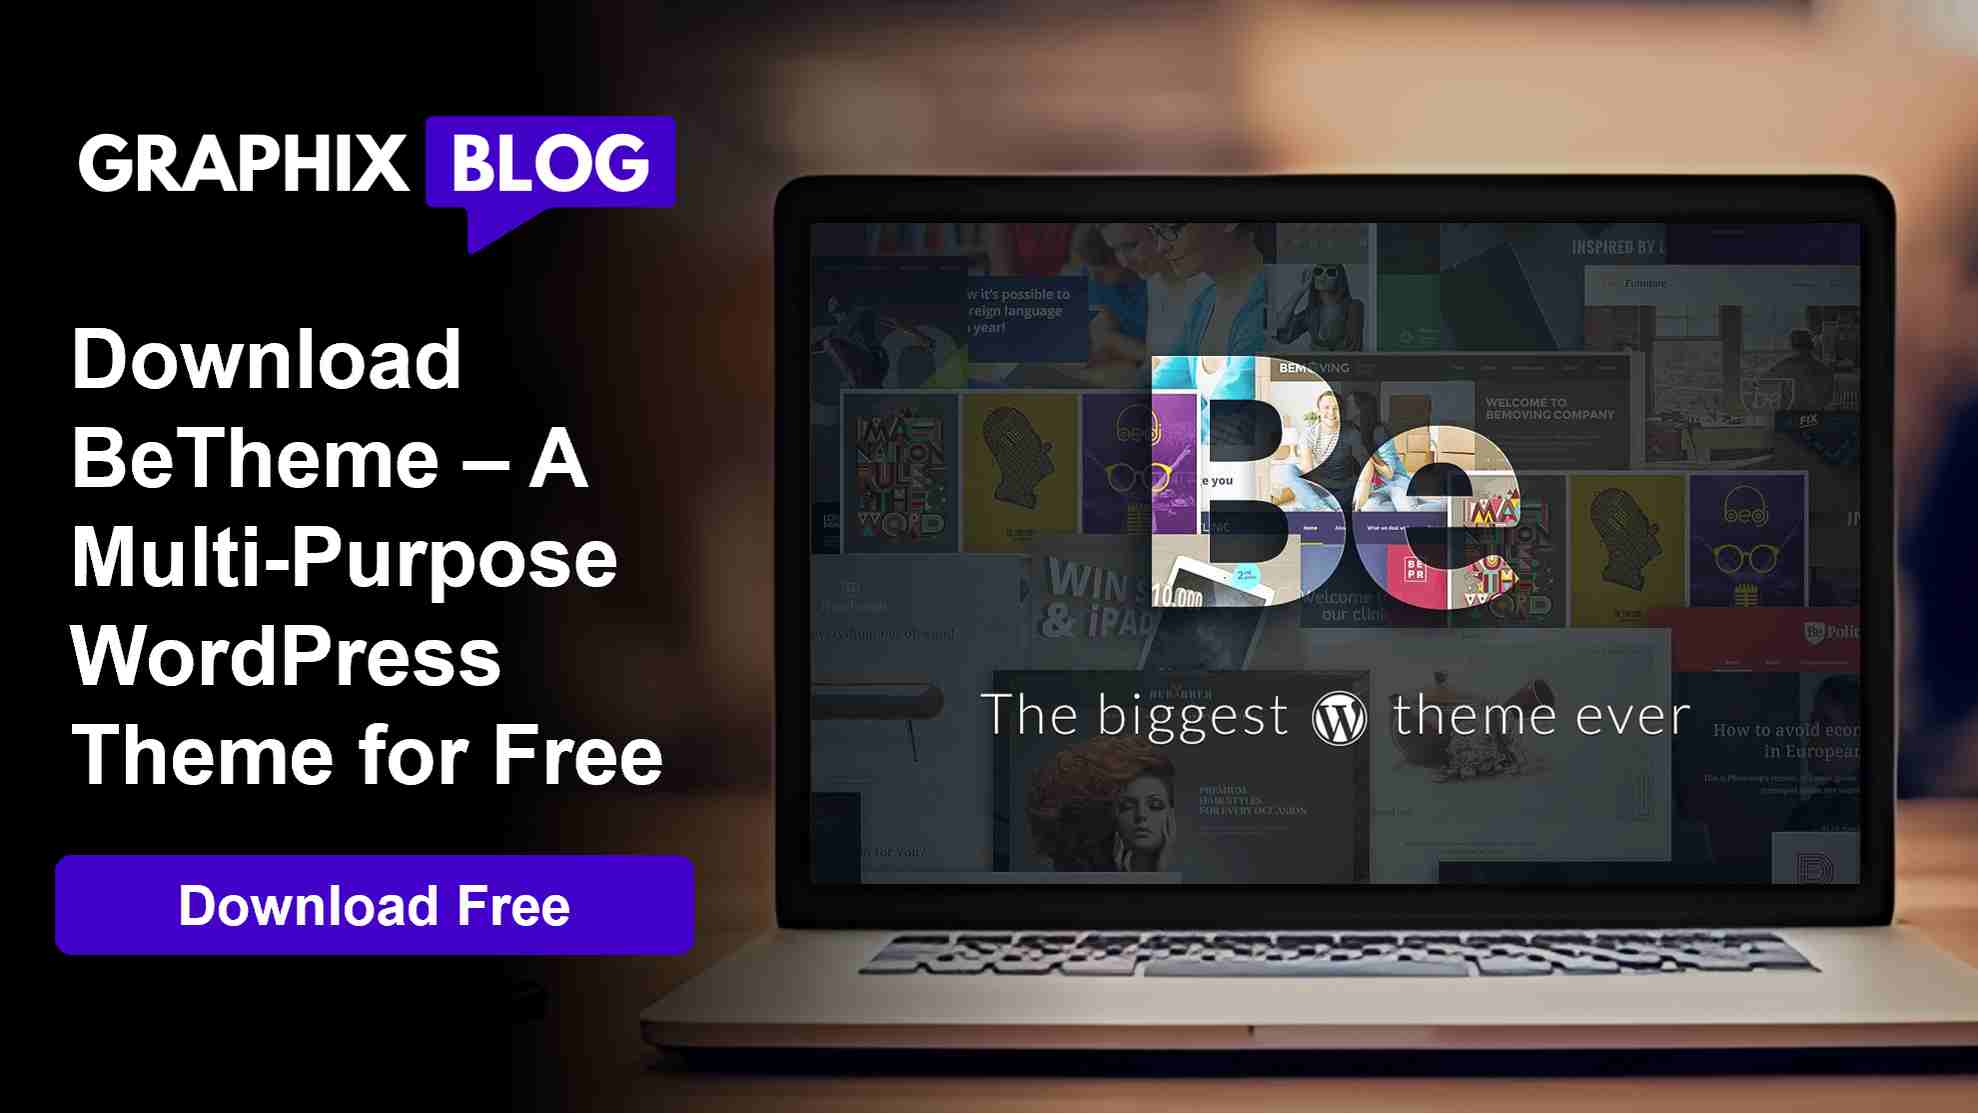 BeTheme - A Multi-Purpose WordPress Theme